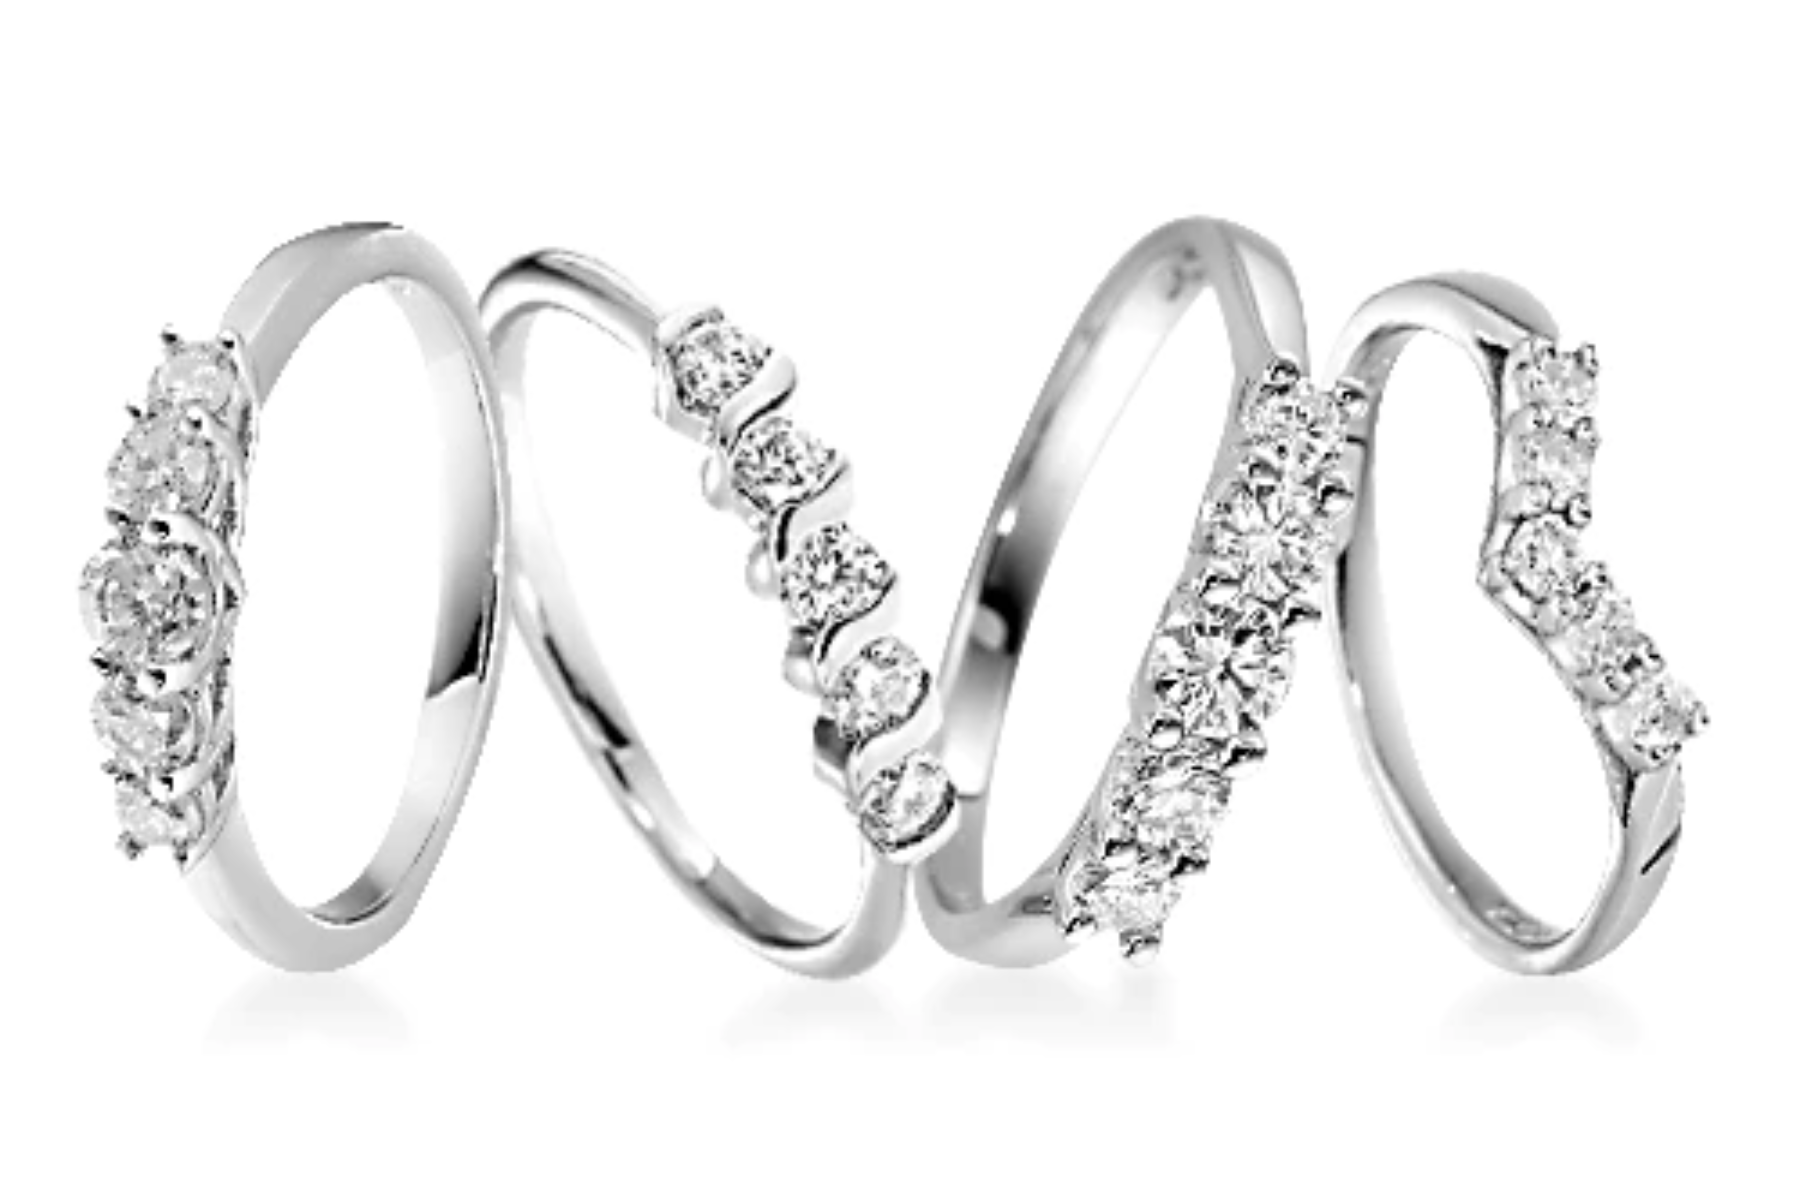 Four different designs of platinum rings